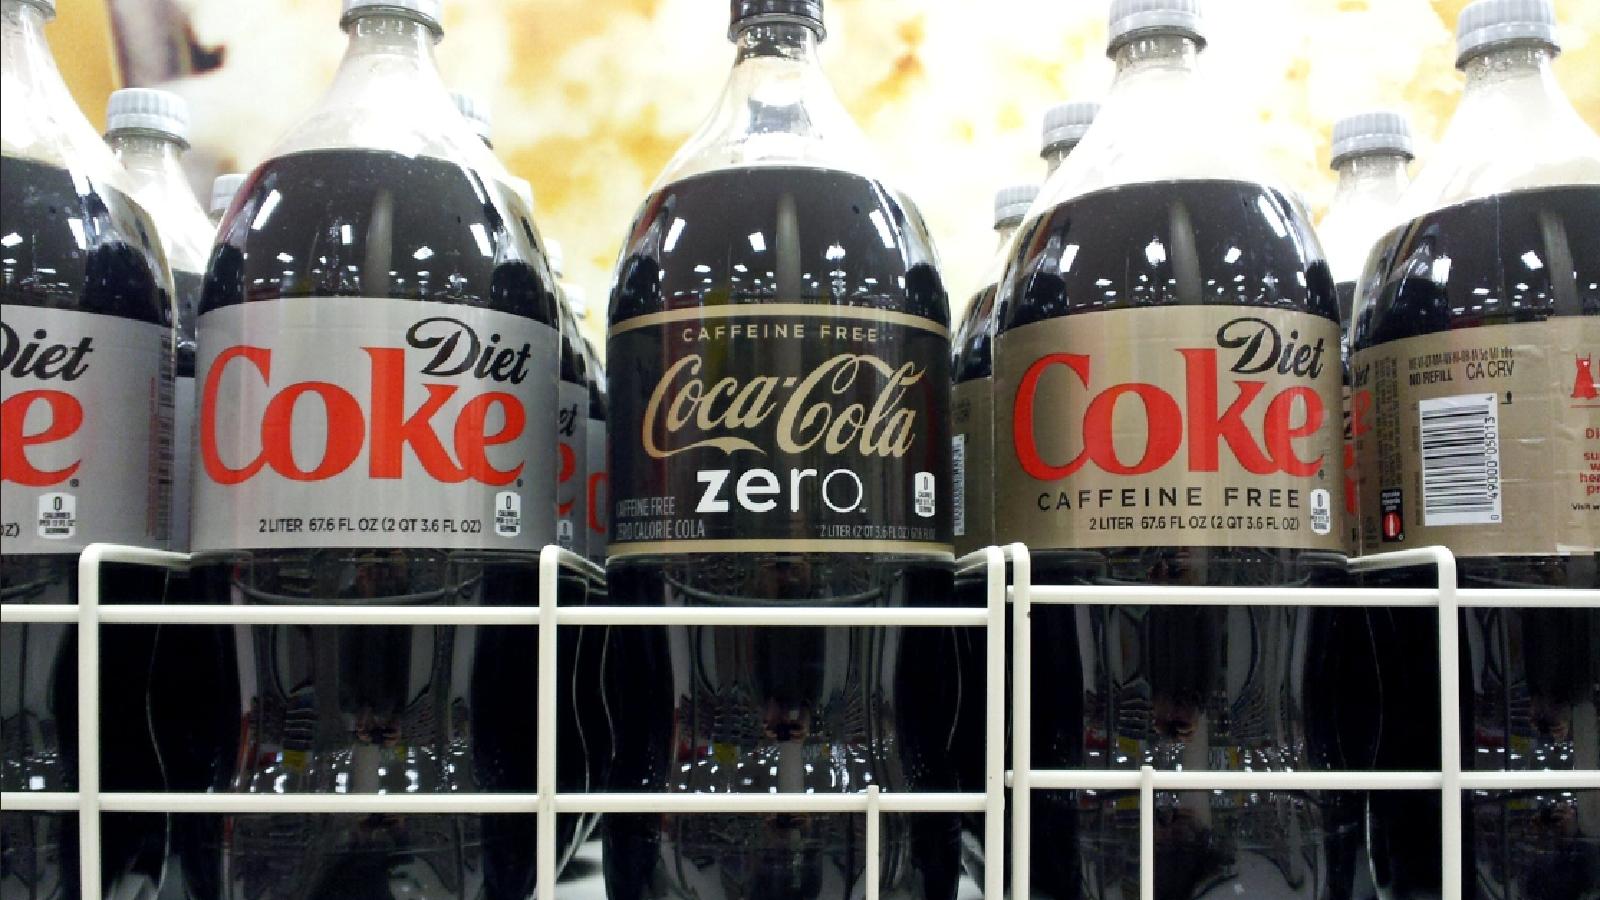 Diet Coke Coke Zero